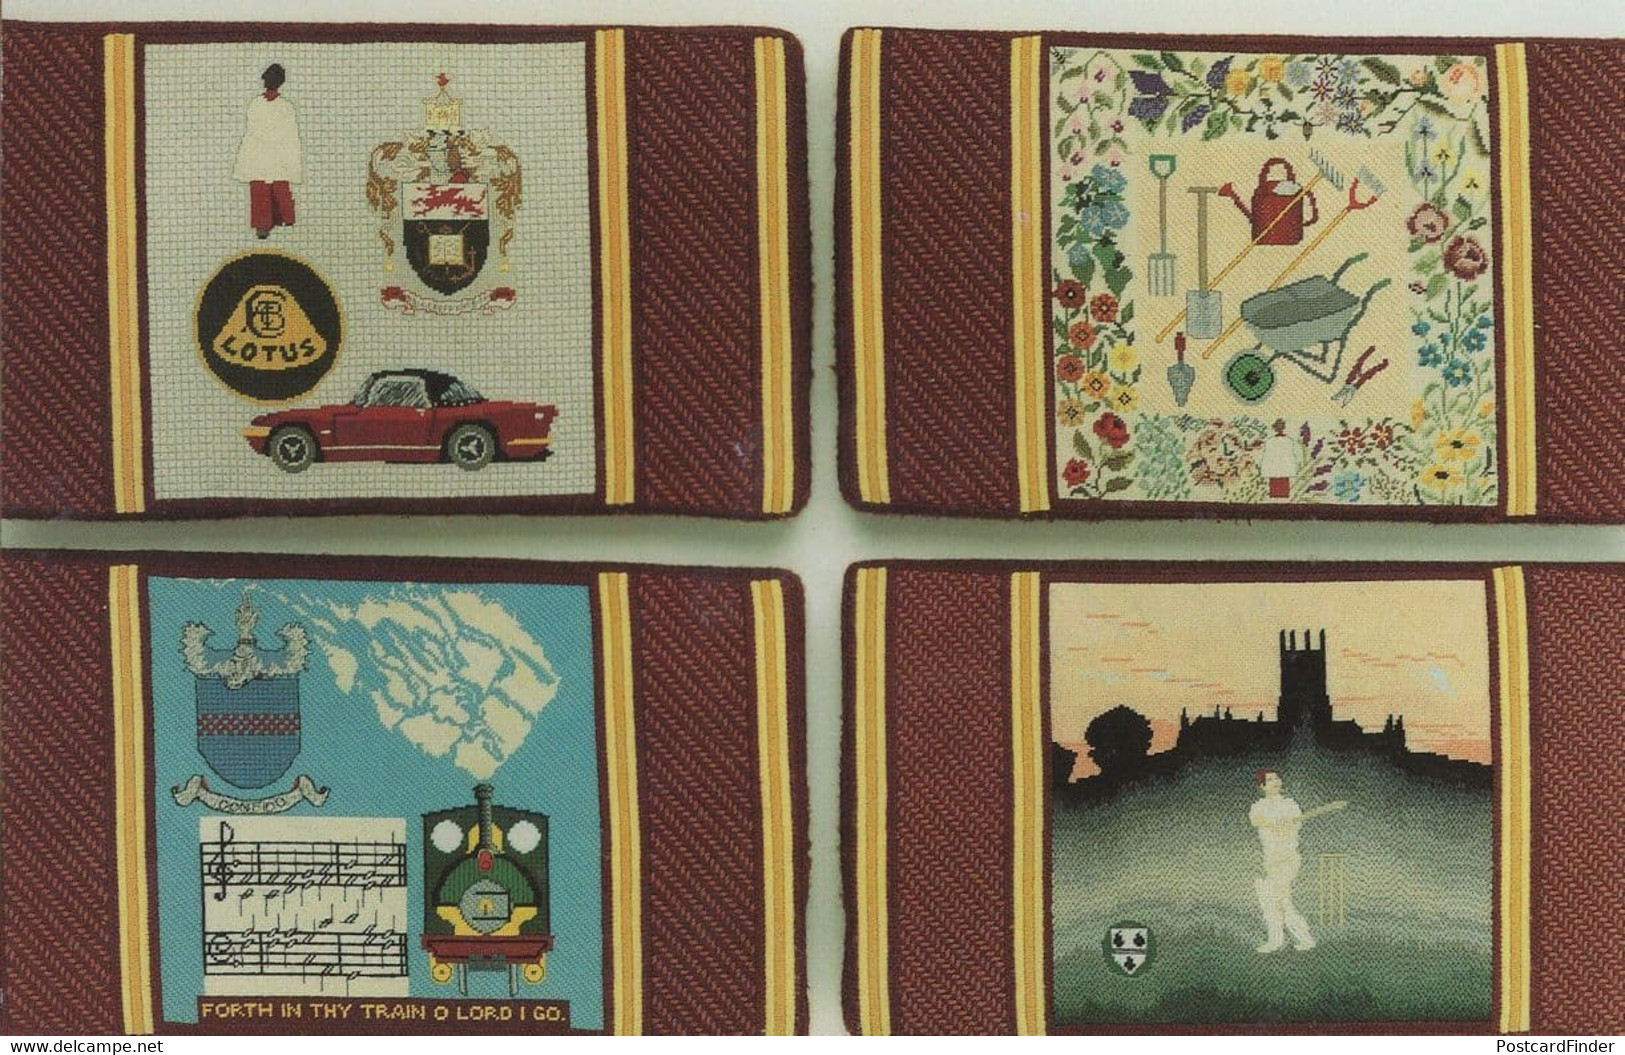 Ledbury Parish Church Cushions Choir Cricket Sheet Music Cushions Postcard - Cricket